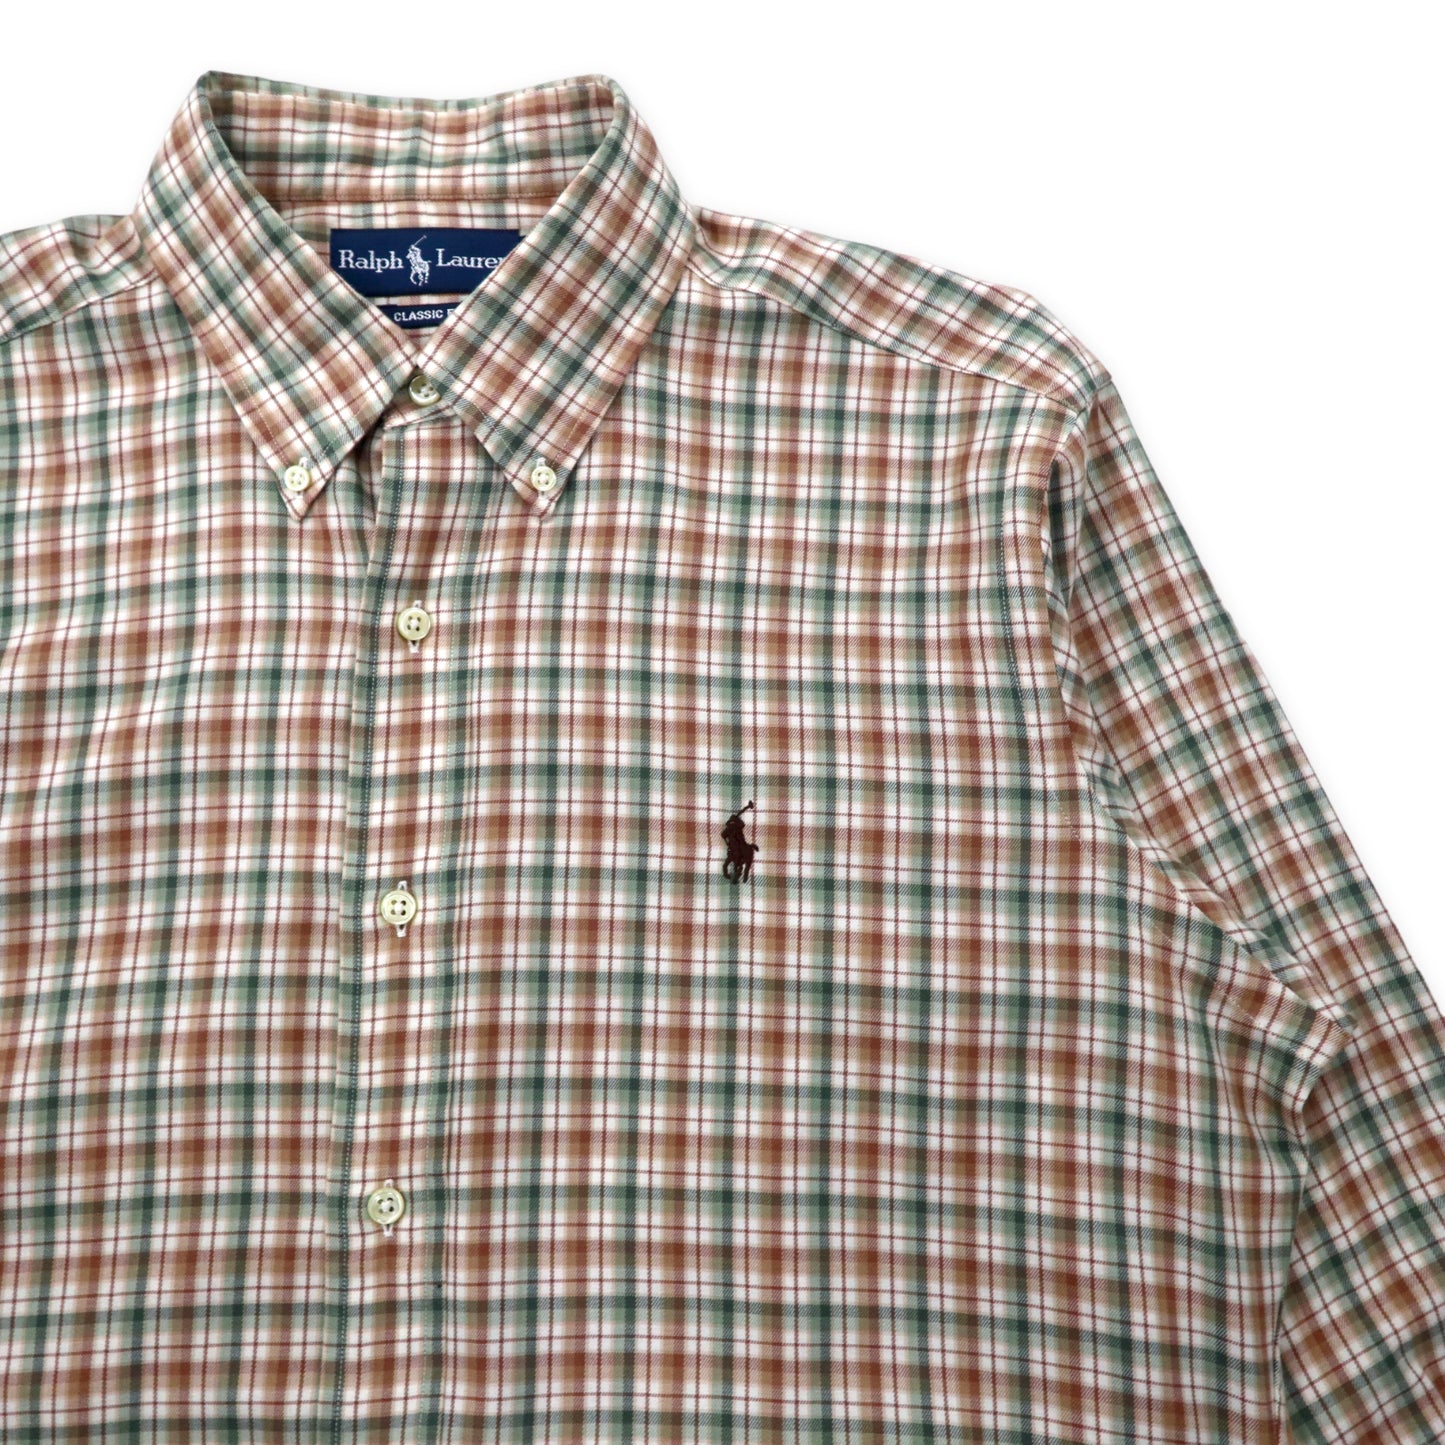 Ralph Lauren ボタンダウンシャツ L ベージュ チェック コットン CLASSIC FIT スモールポニー刺繍